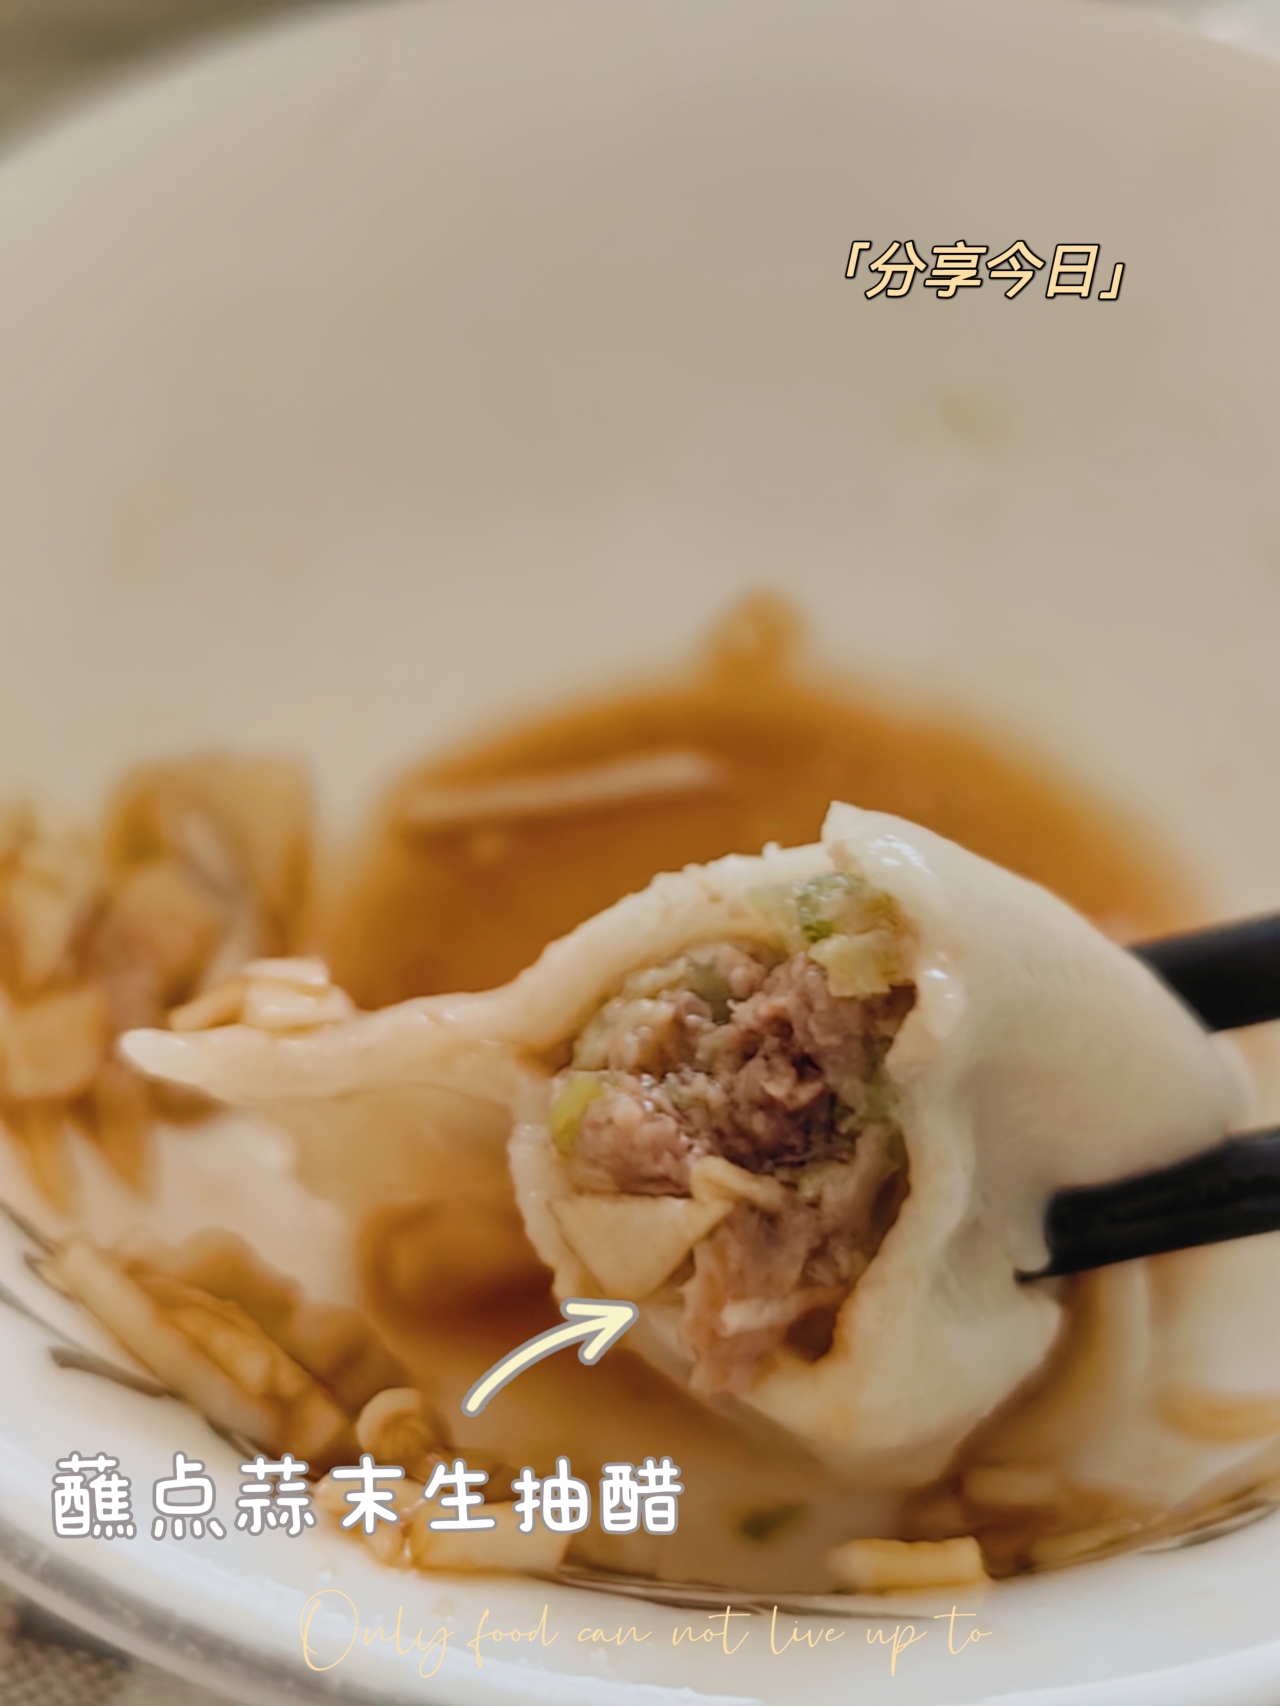 牛肉芹菜饺子的做法